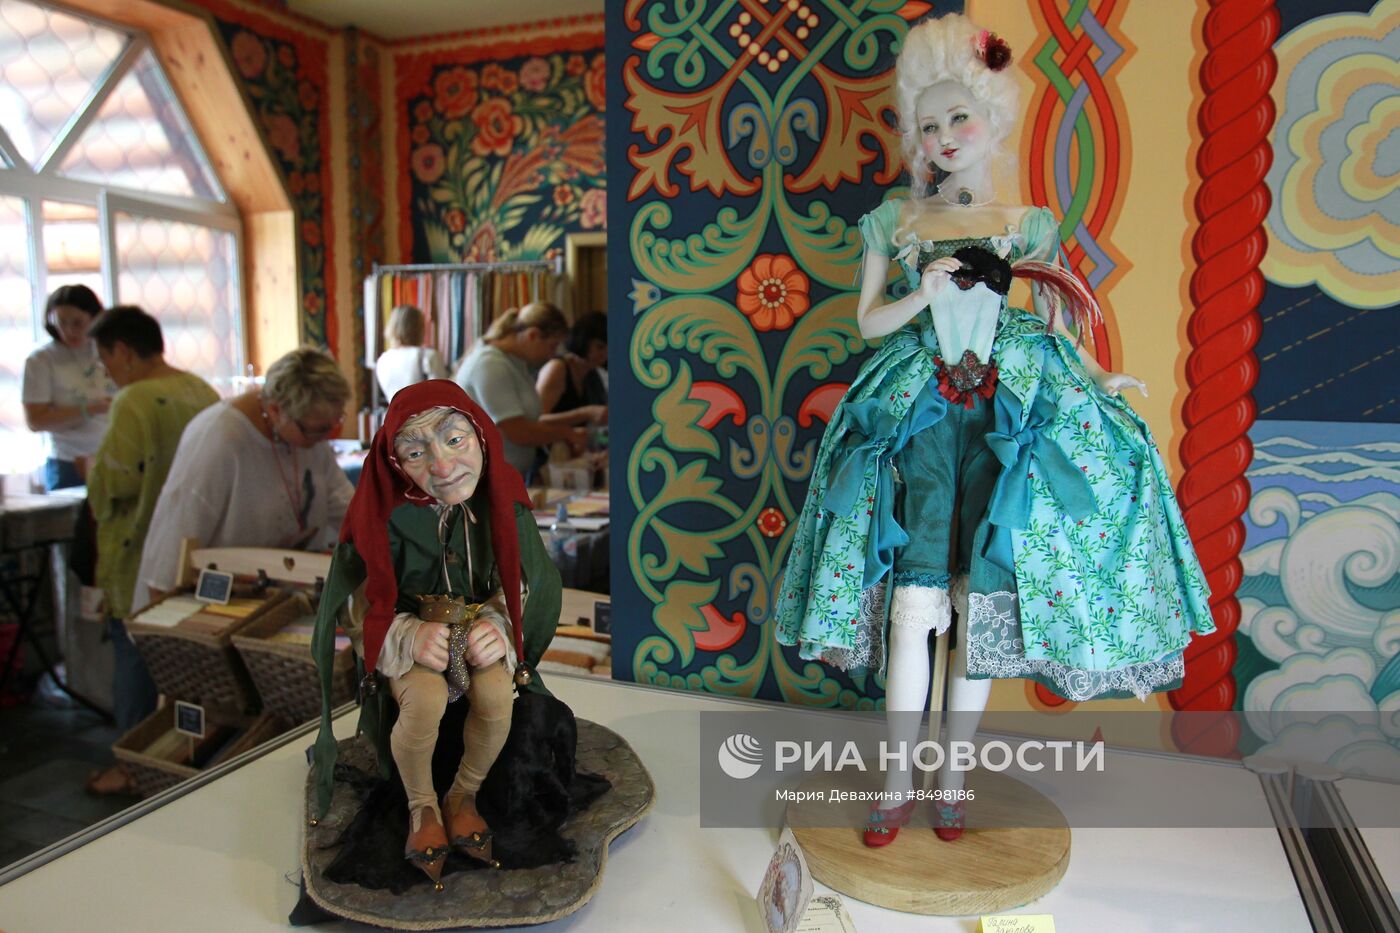 Выставка "Бал кукол в Кремле" 